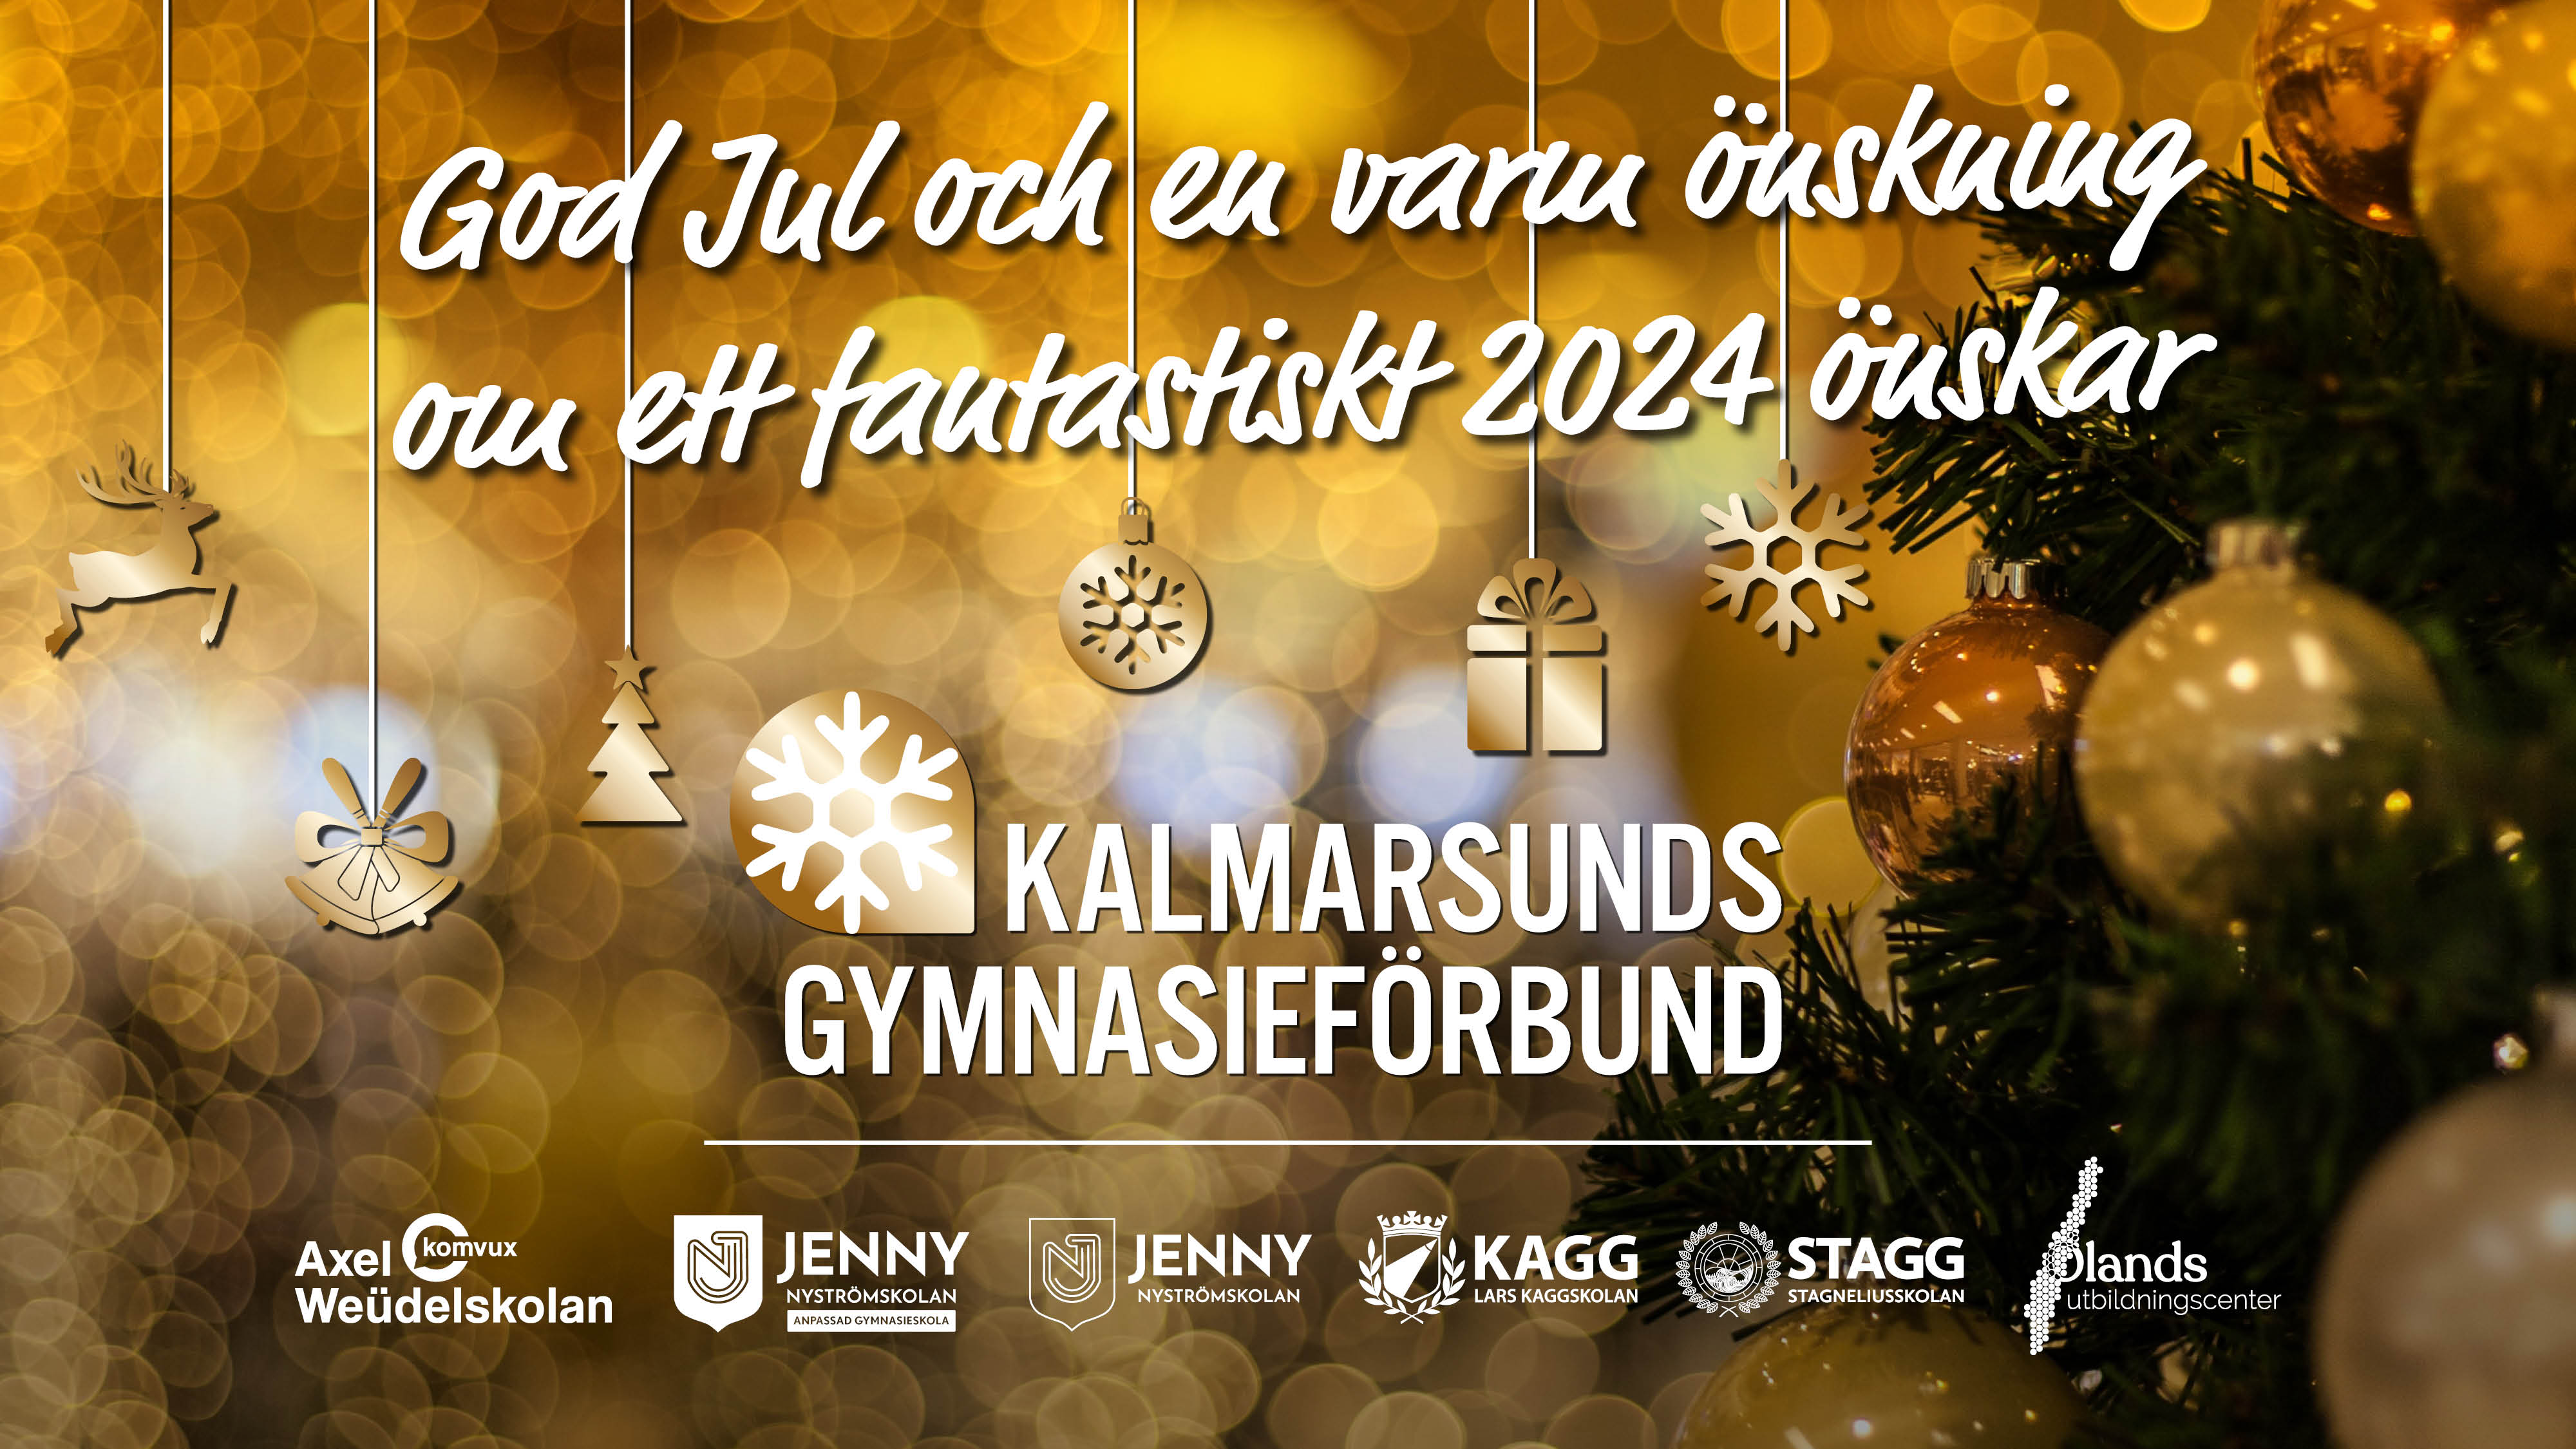 God jul och gott nytt år önskar Kalmarsunds gymnasieförbund